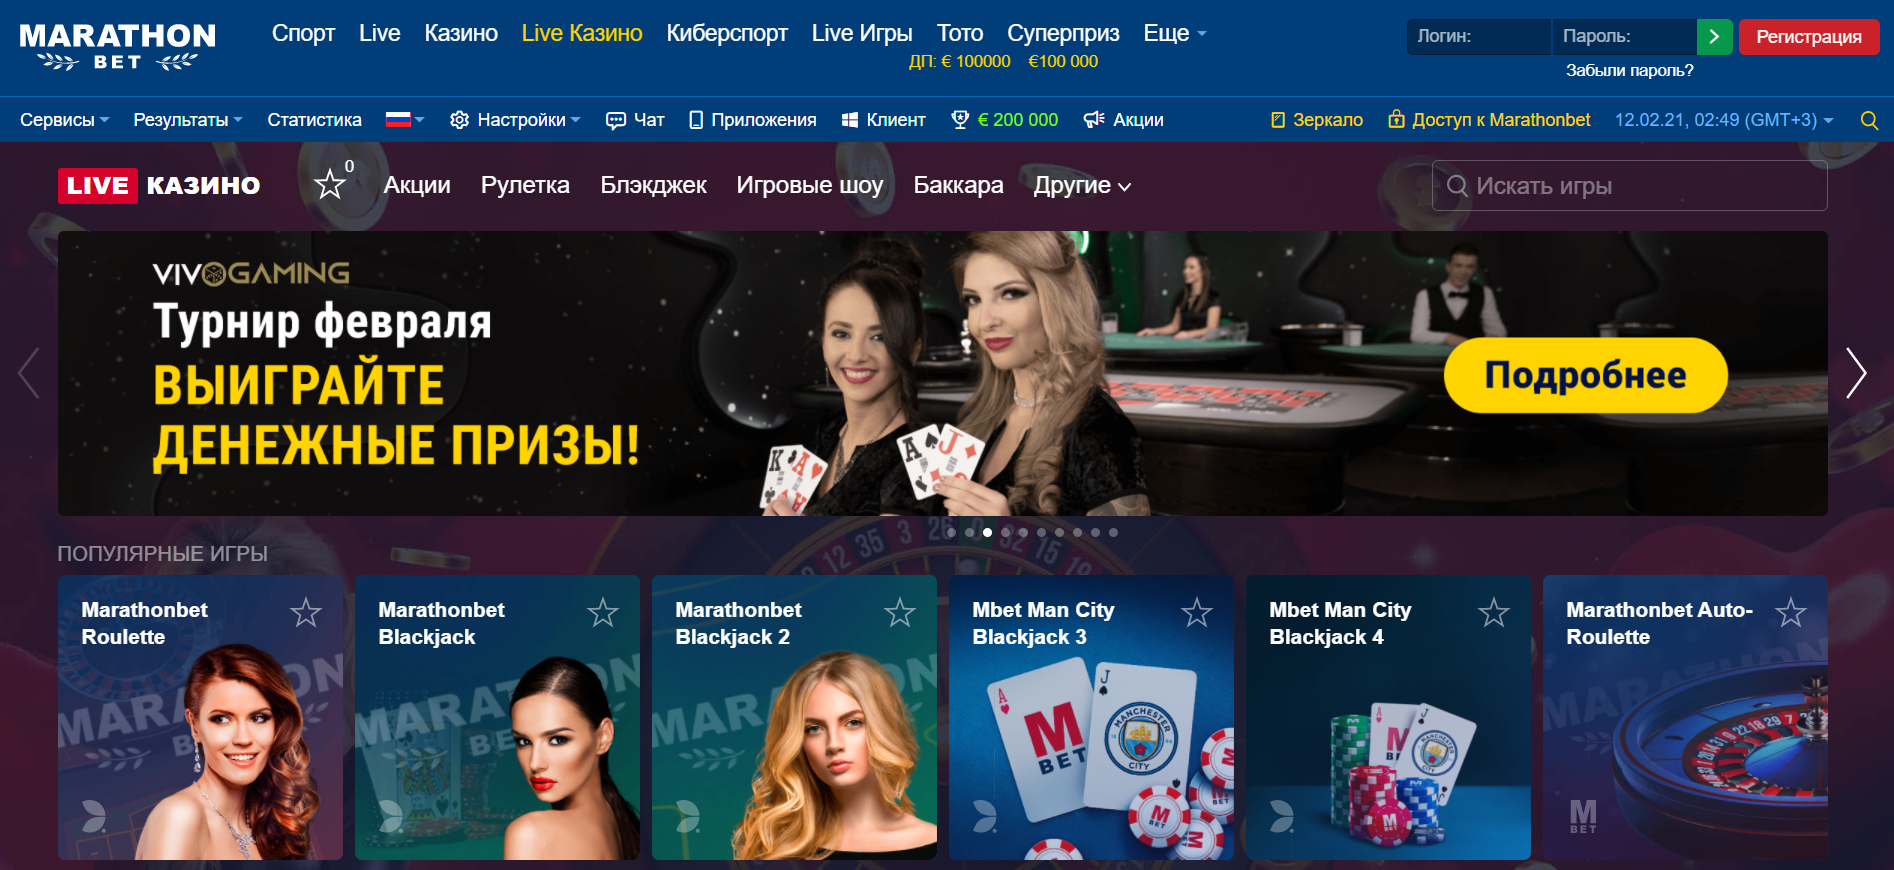 Бонусы казино марафон карты играть в дурака переводного турнир онлайн по сети